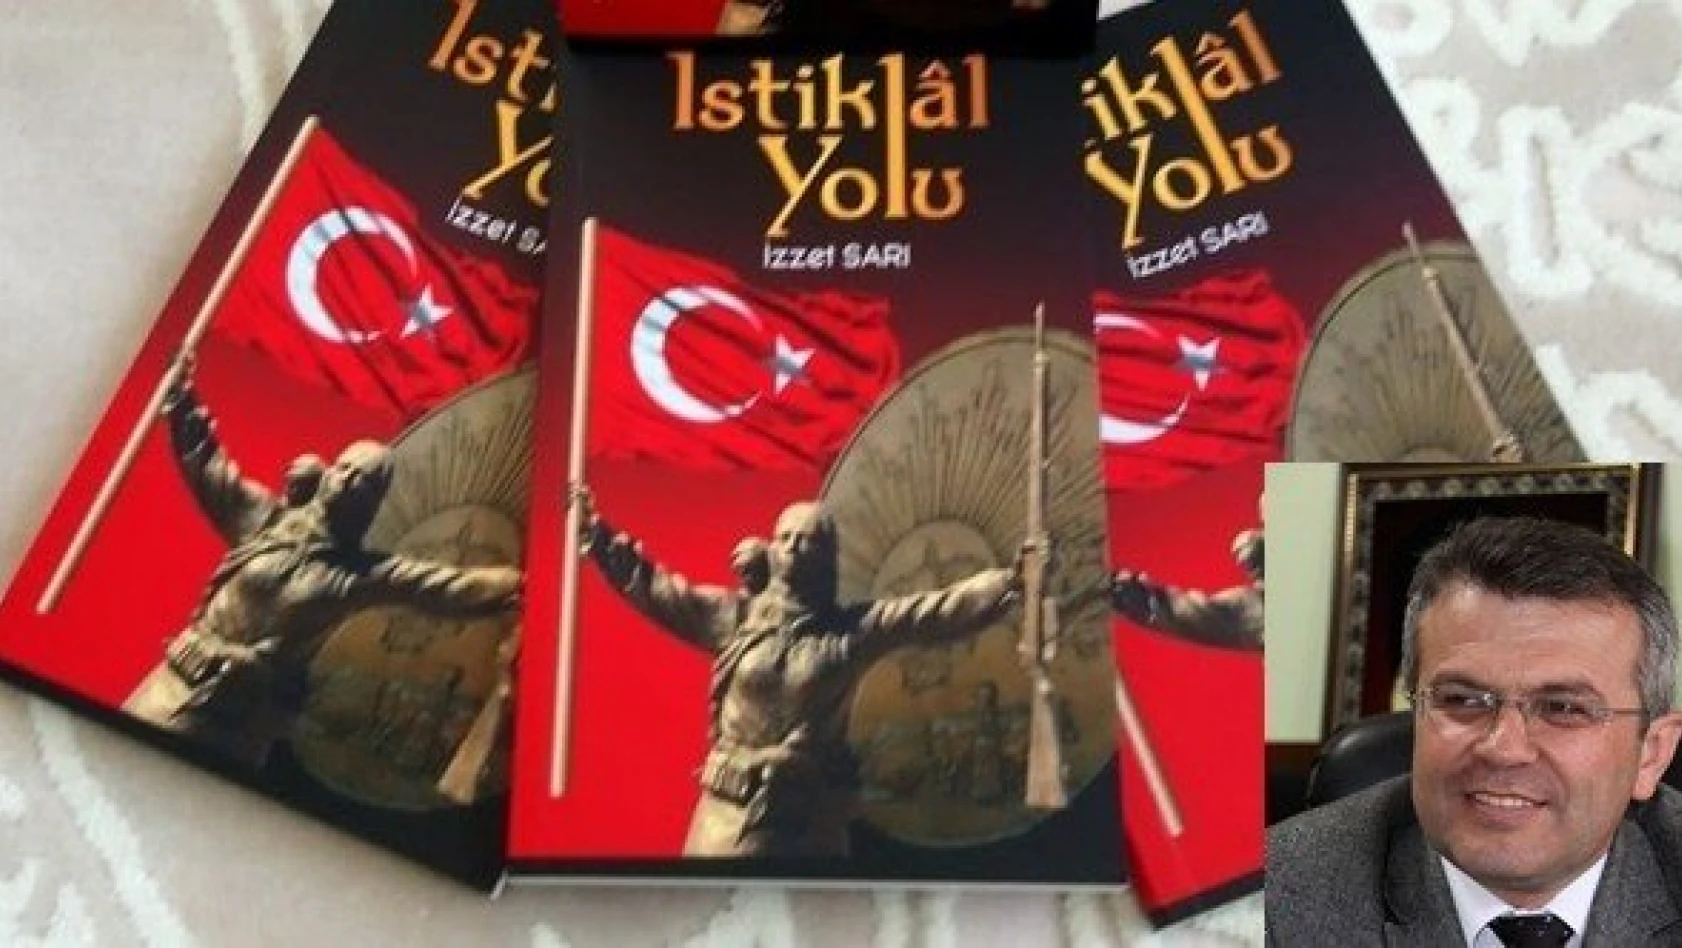 Gazeteci İzzet Sarı'nın tarihe ışık tutması beklenen kitabı çıktı